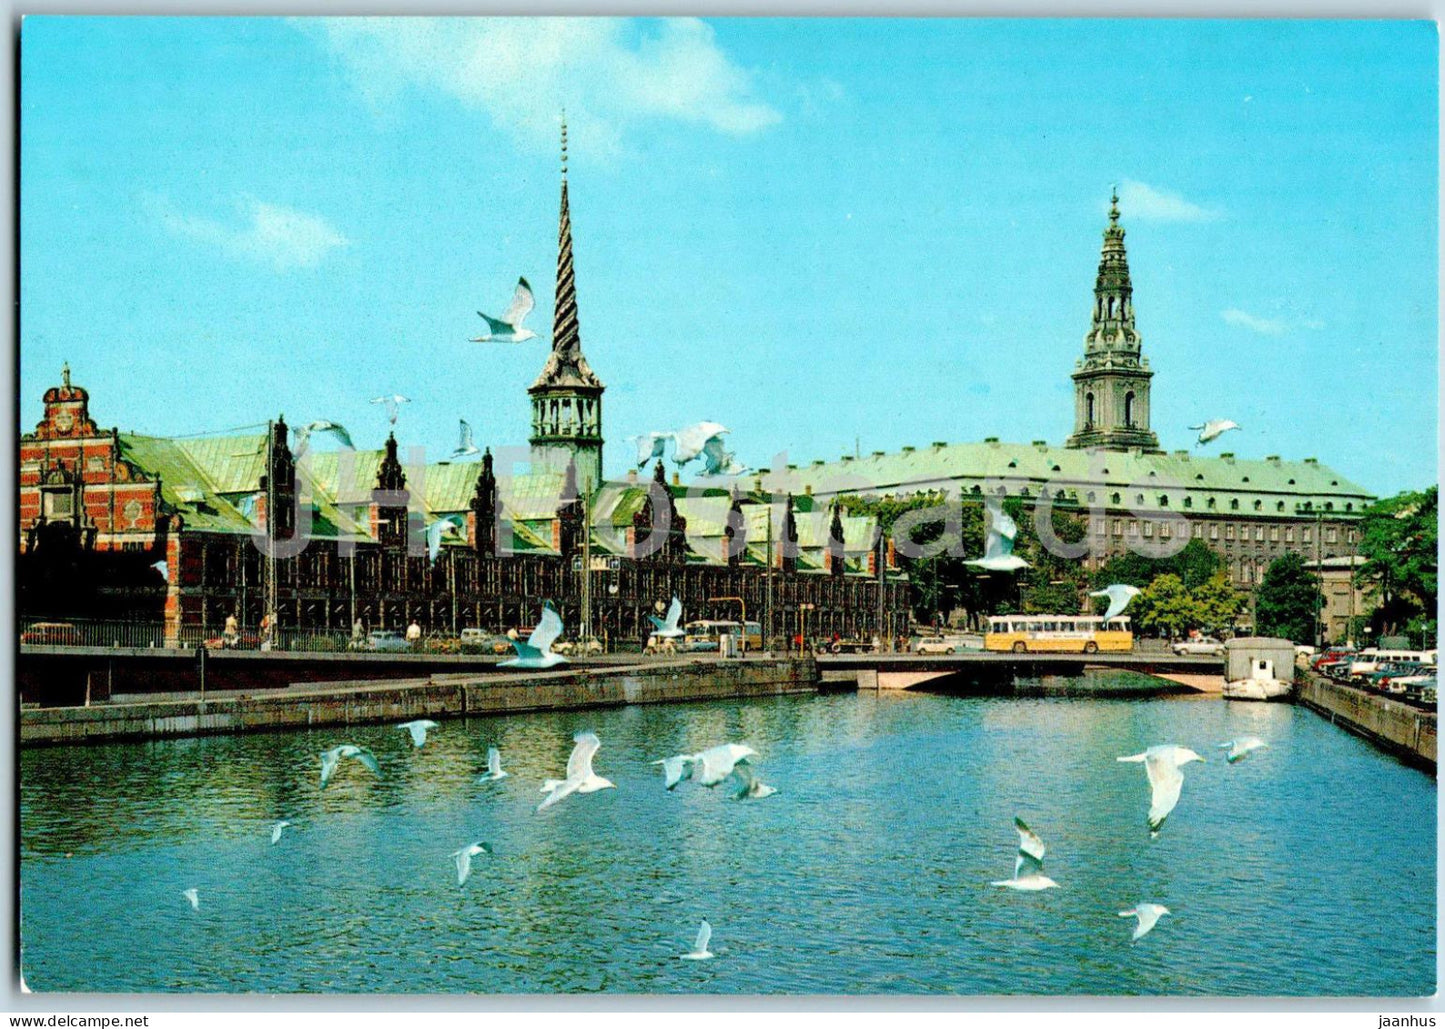 Copenhagen - Kobenhavn - Borsen og Christiansborg - Stock Exchange and Christiansborg Palace - T 121 - Denmark - unused - JH Postcards